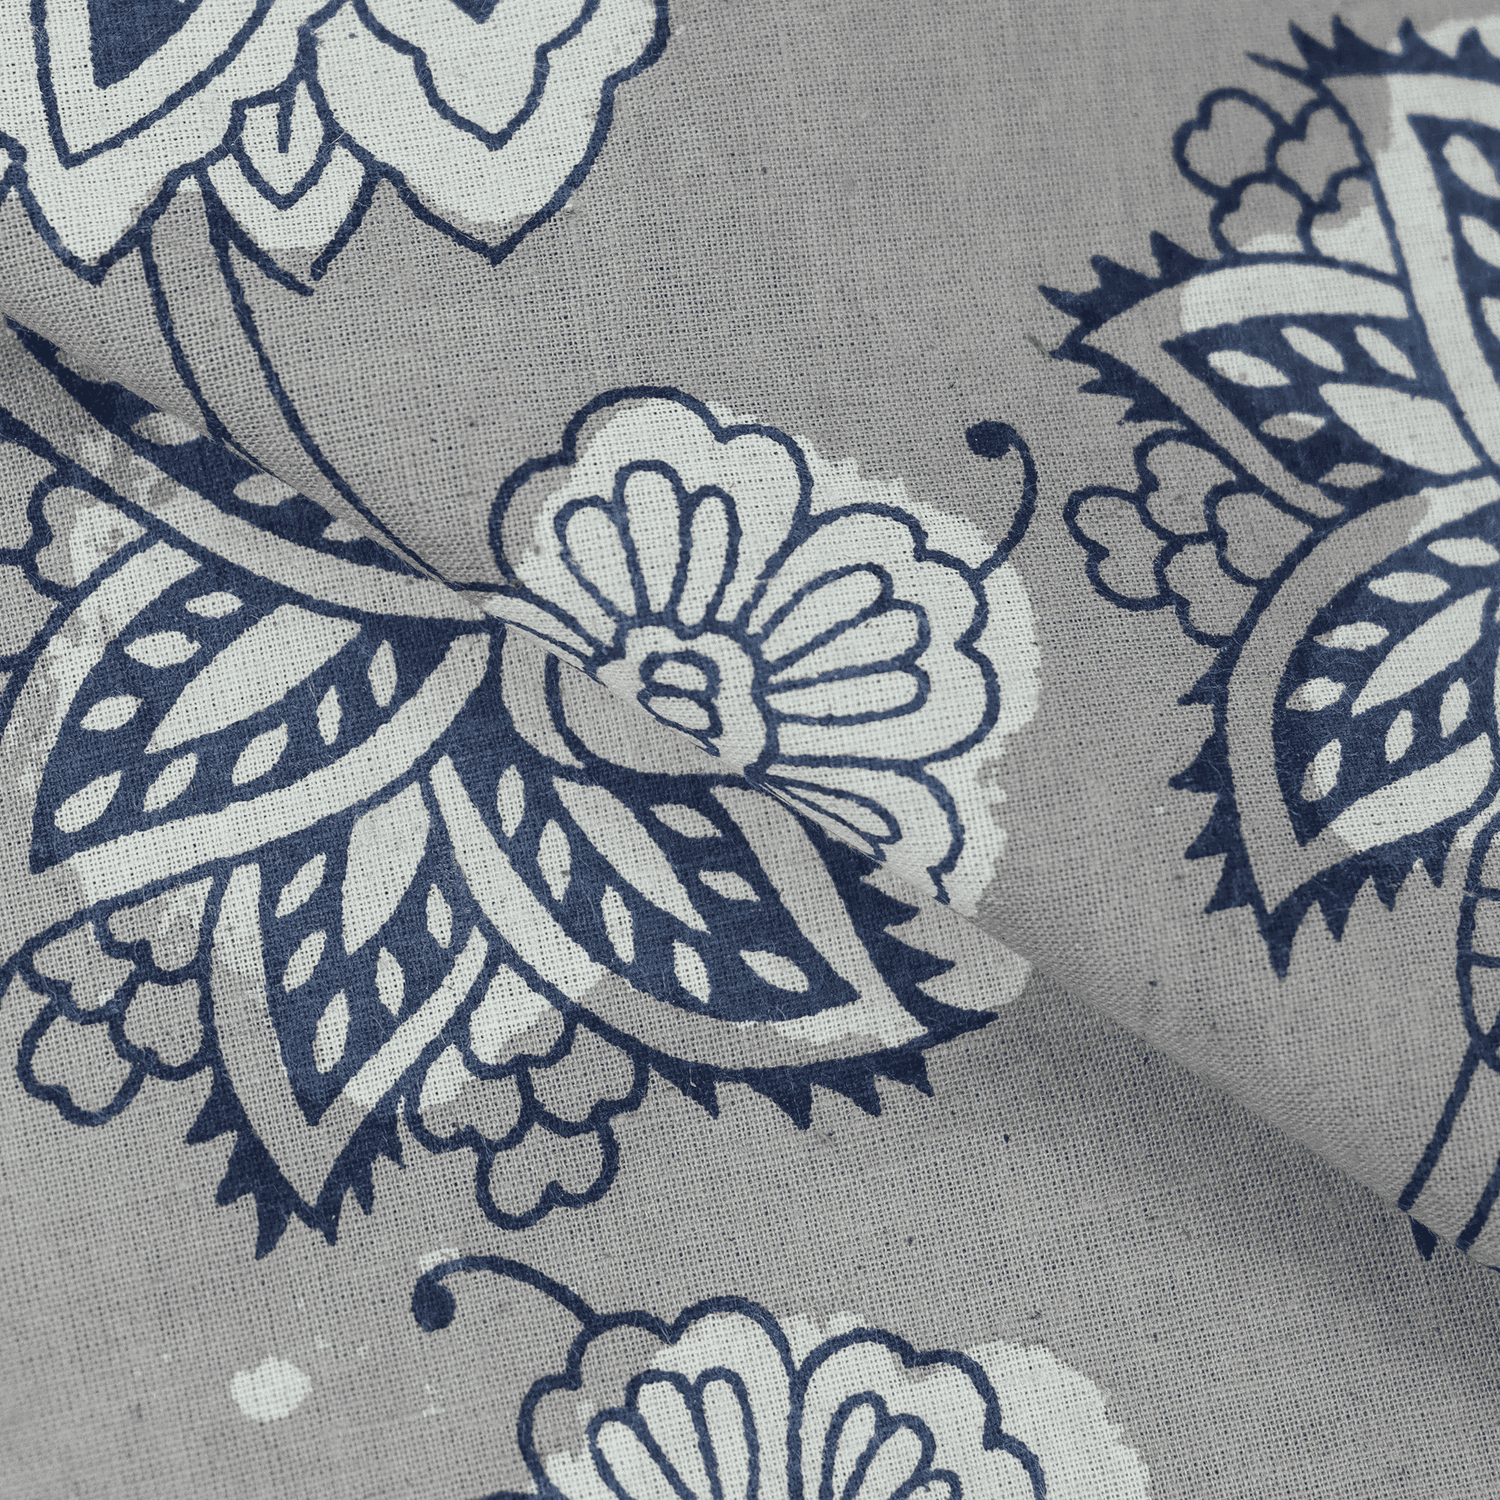 Kahsish Floral Print Jaipur Cotton Fabric